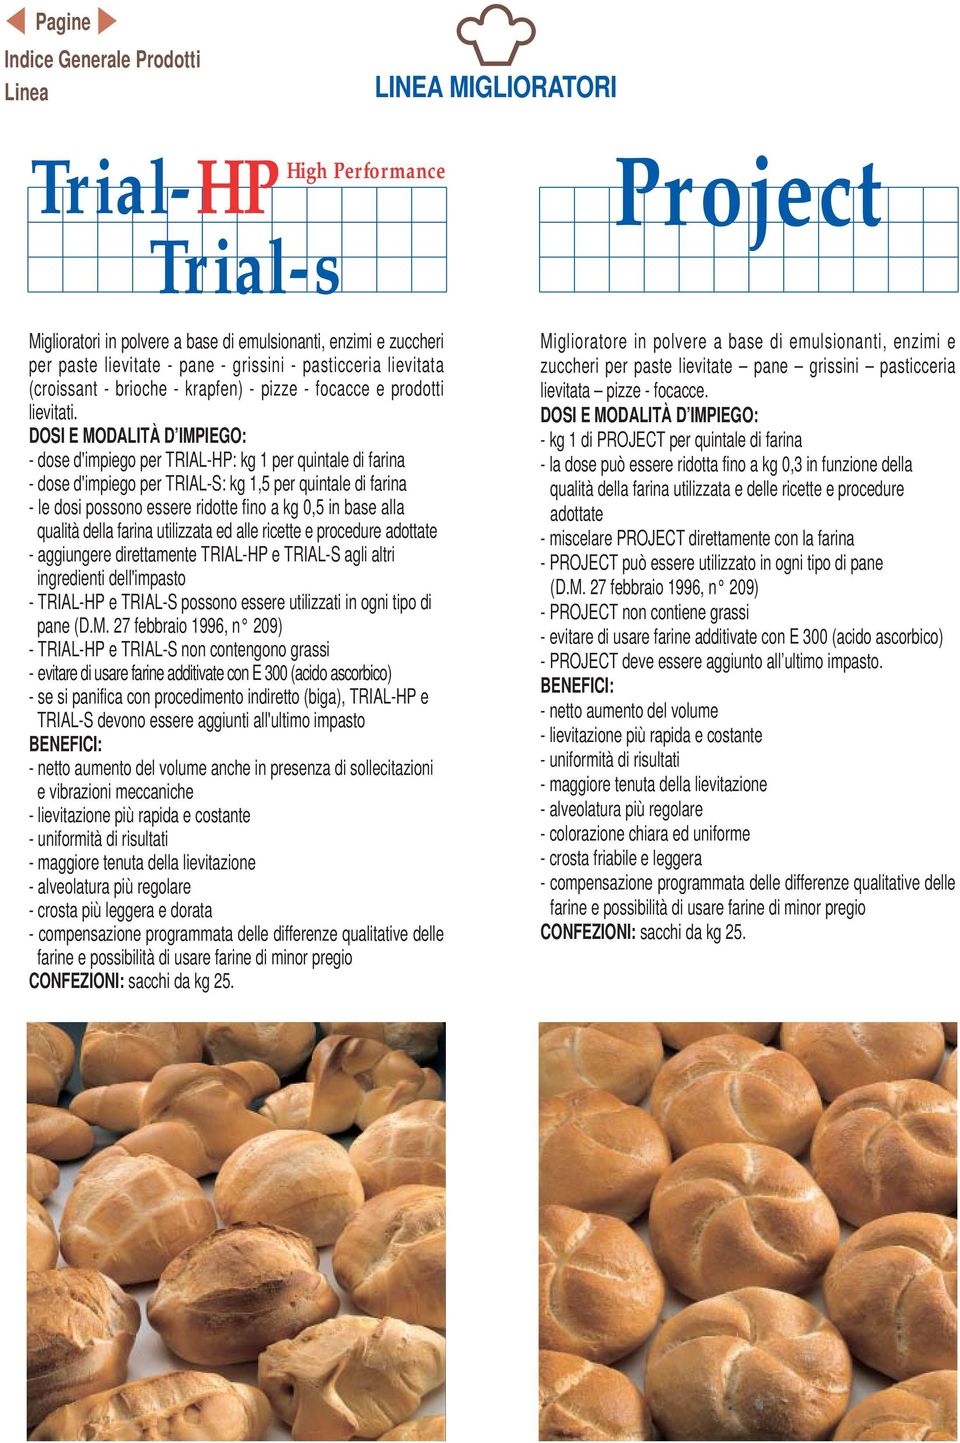 - dose d'impiego per TRIAL-HP: kg 1 per quintale di farina - dose d'impiego per TRIAL-S: kg 1,5 per quintale di farina - le dosi possono essere ridotte fino a kg 0,5 in base alla qualità della farina